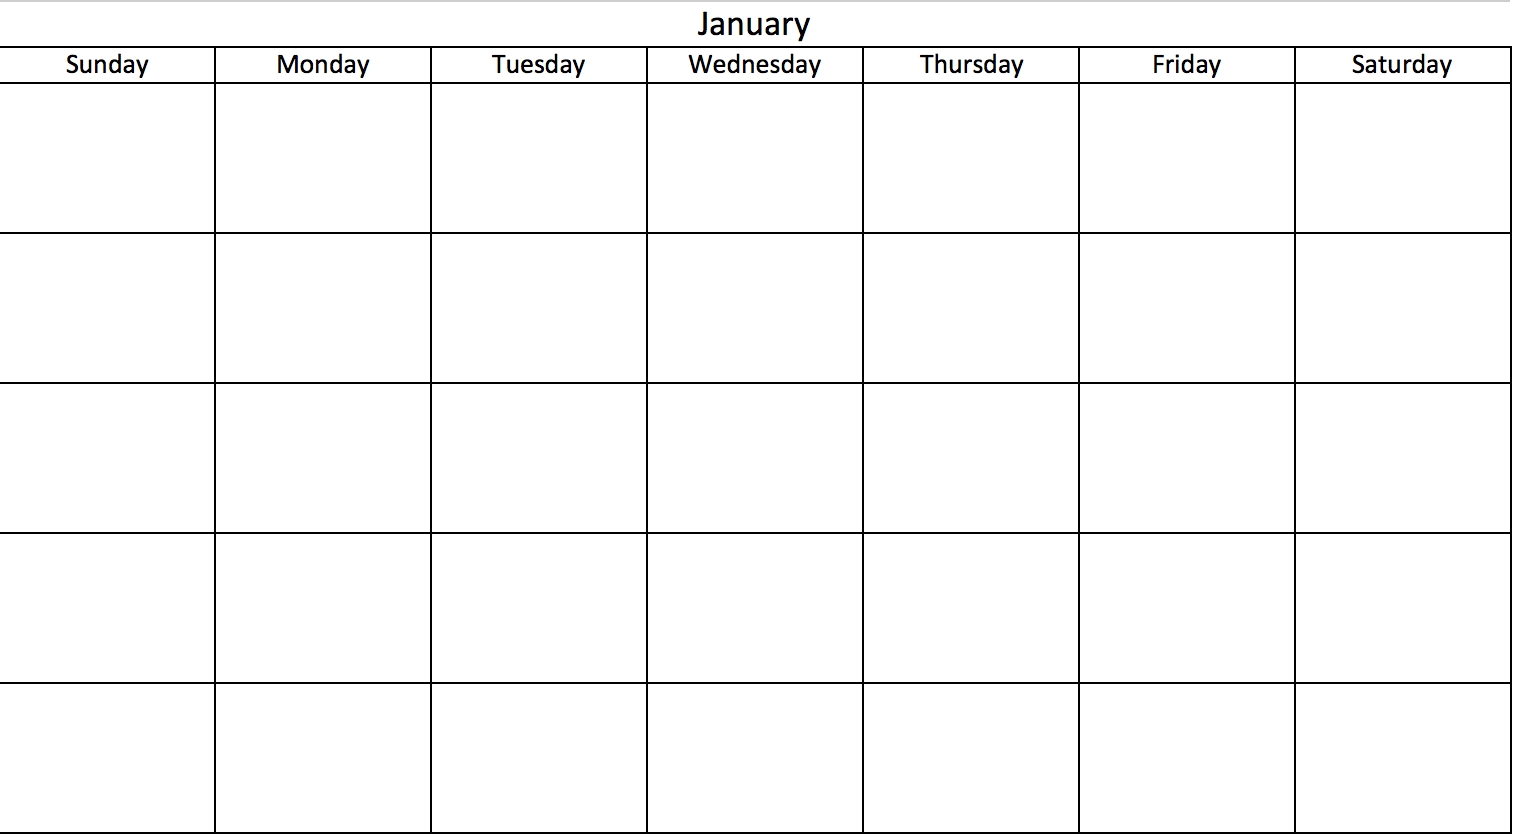 Printable Calendar No Dates | Printable Calendar 2019 for Blank Calendar Mon Through Fri With No Dates Or Month